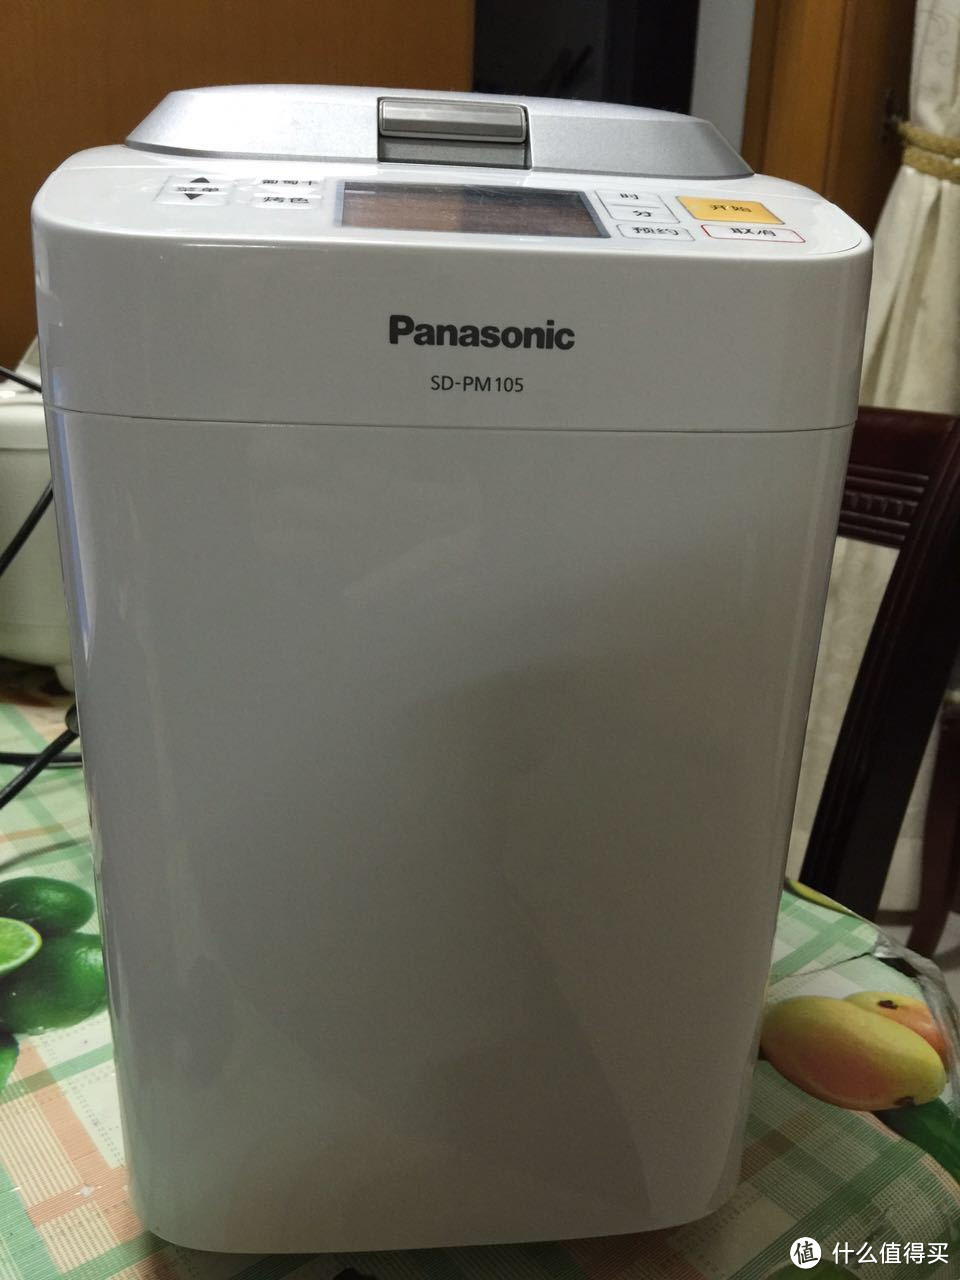 Panasonic 松下 SD-PM105 面包机